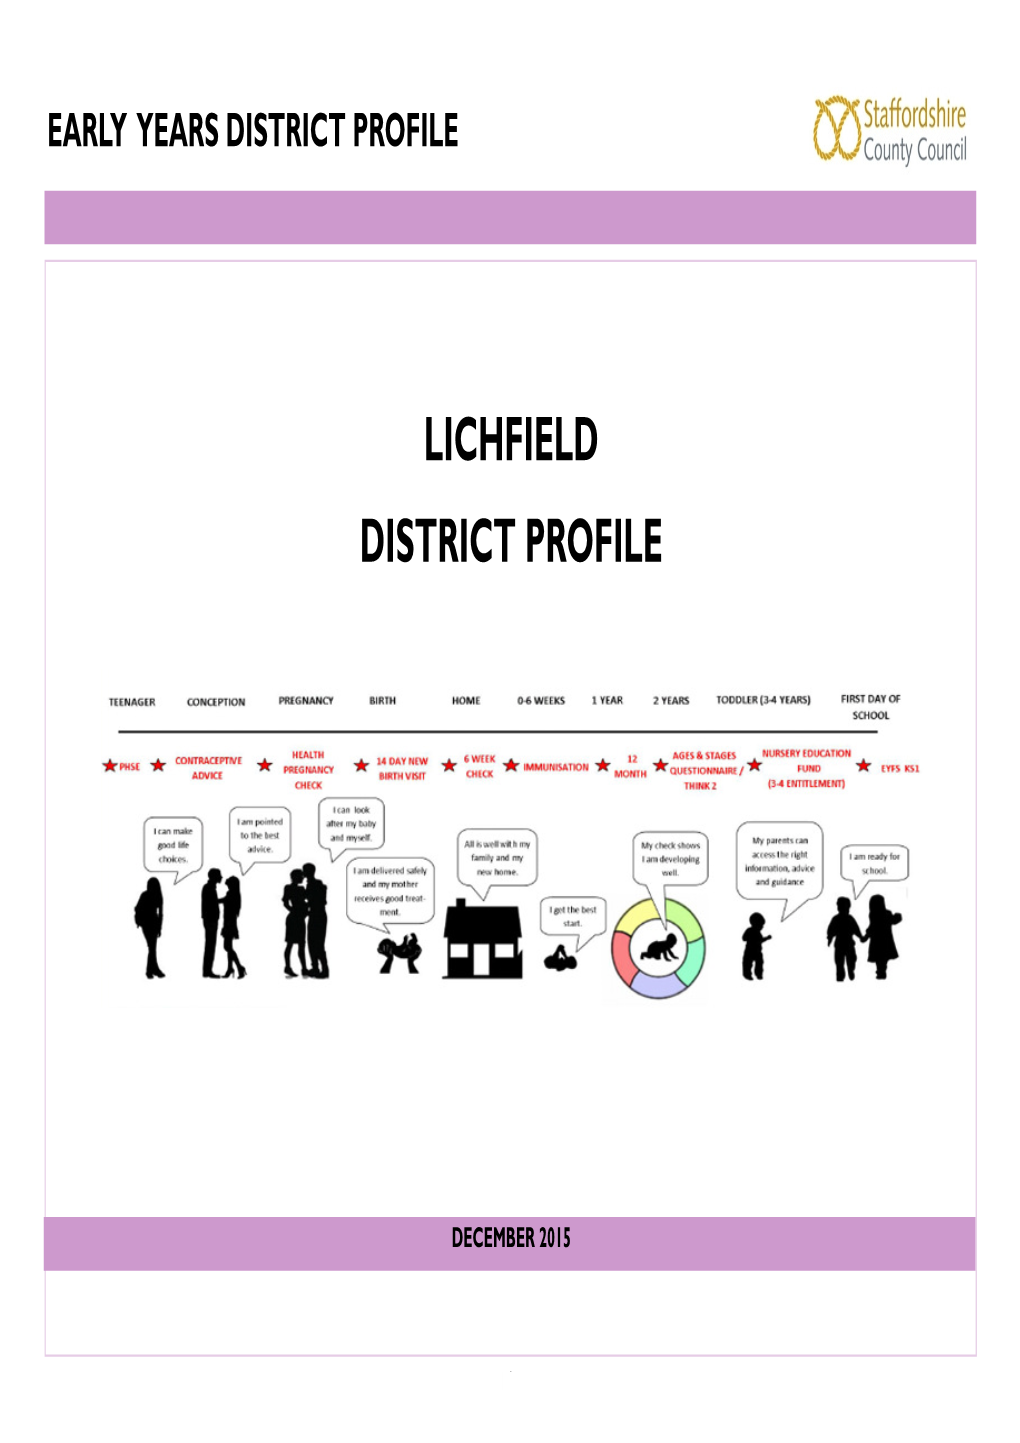 Lichfield District Profile (Dec 2015)